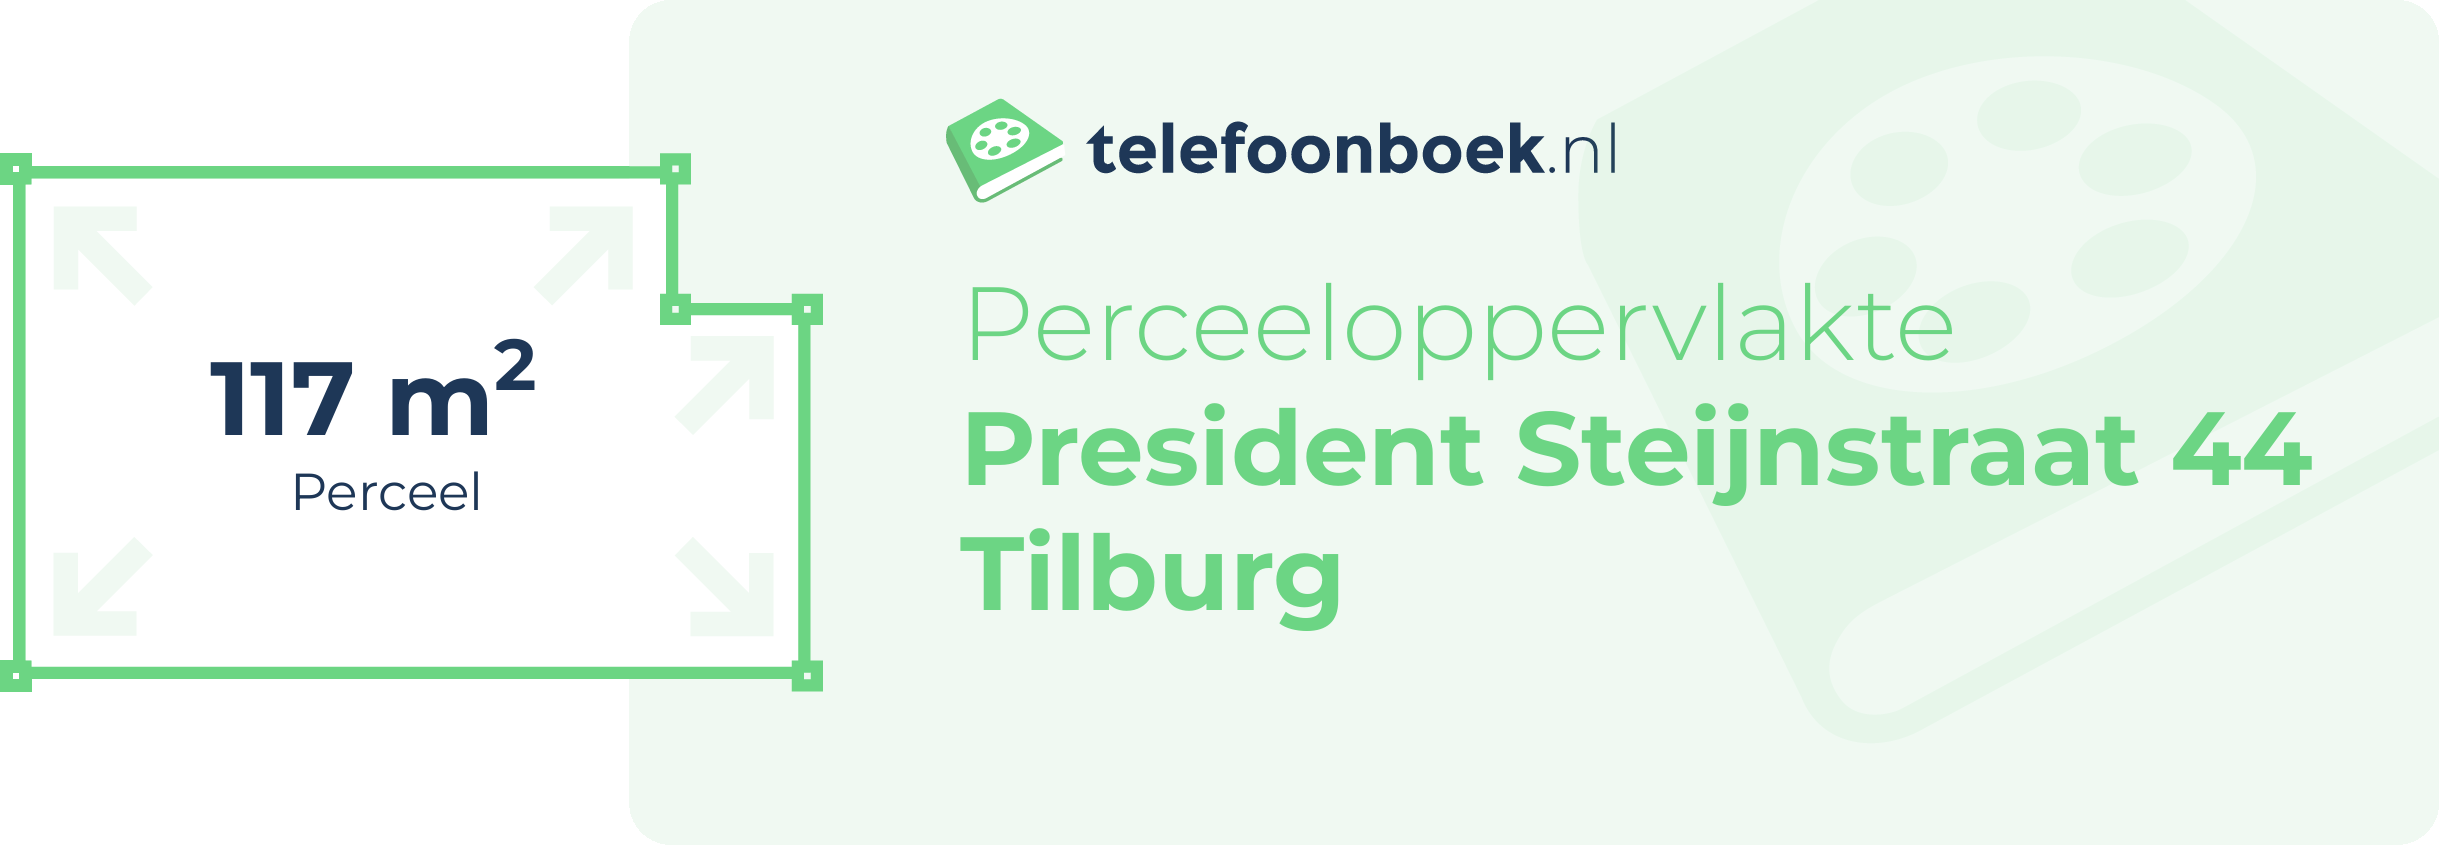 Perceeloppervlakte President Steijnstraat 44 Tilburg